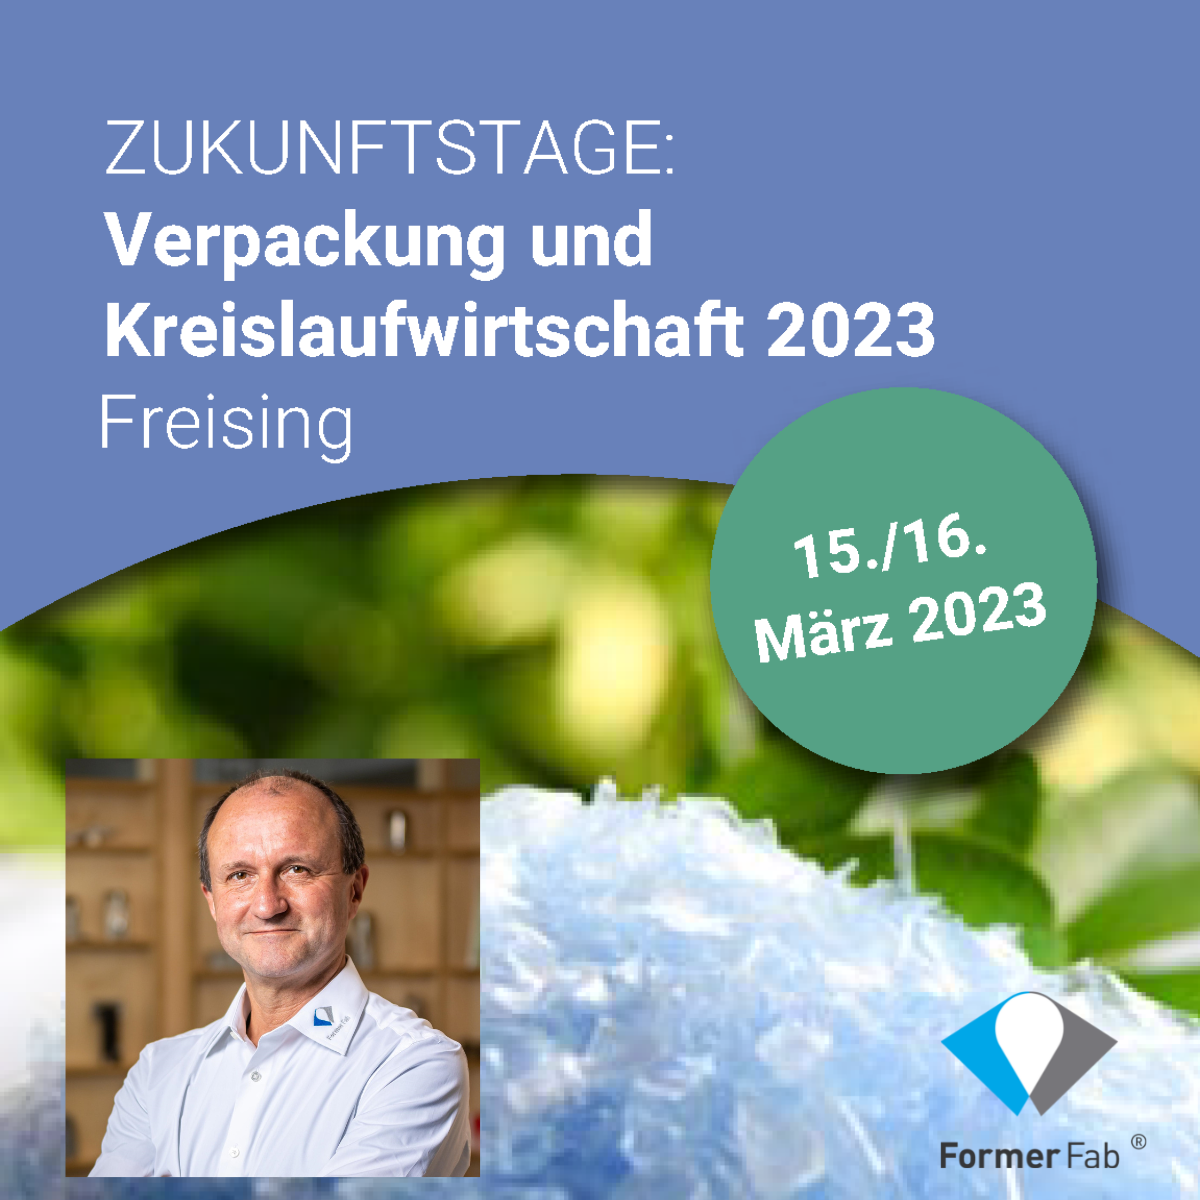 IVLV Zukunftstage Freising 2023